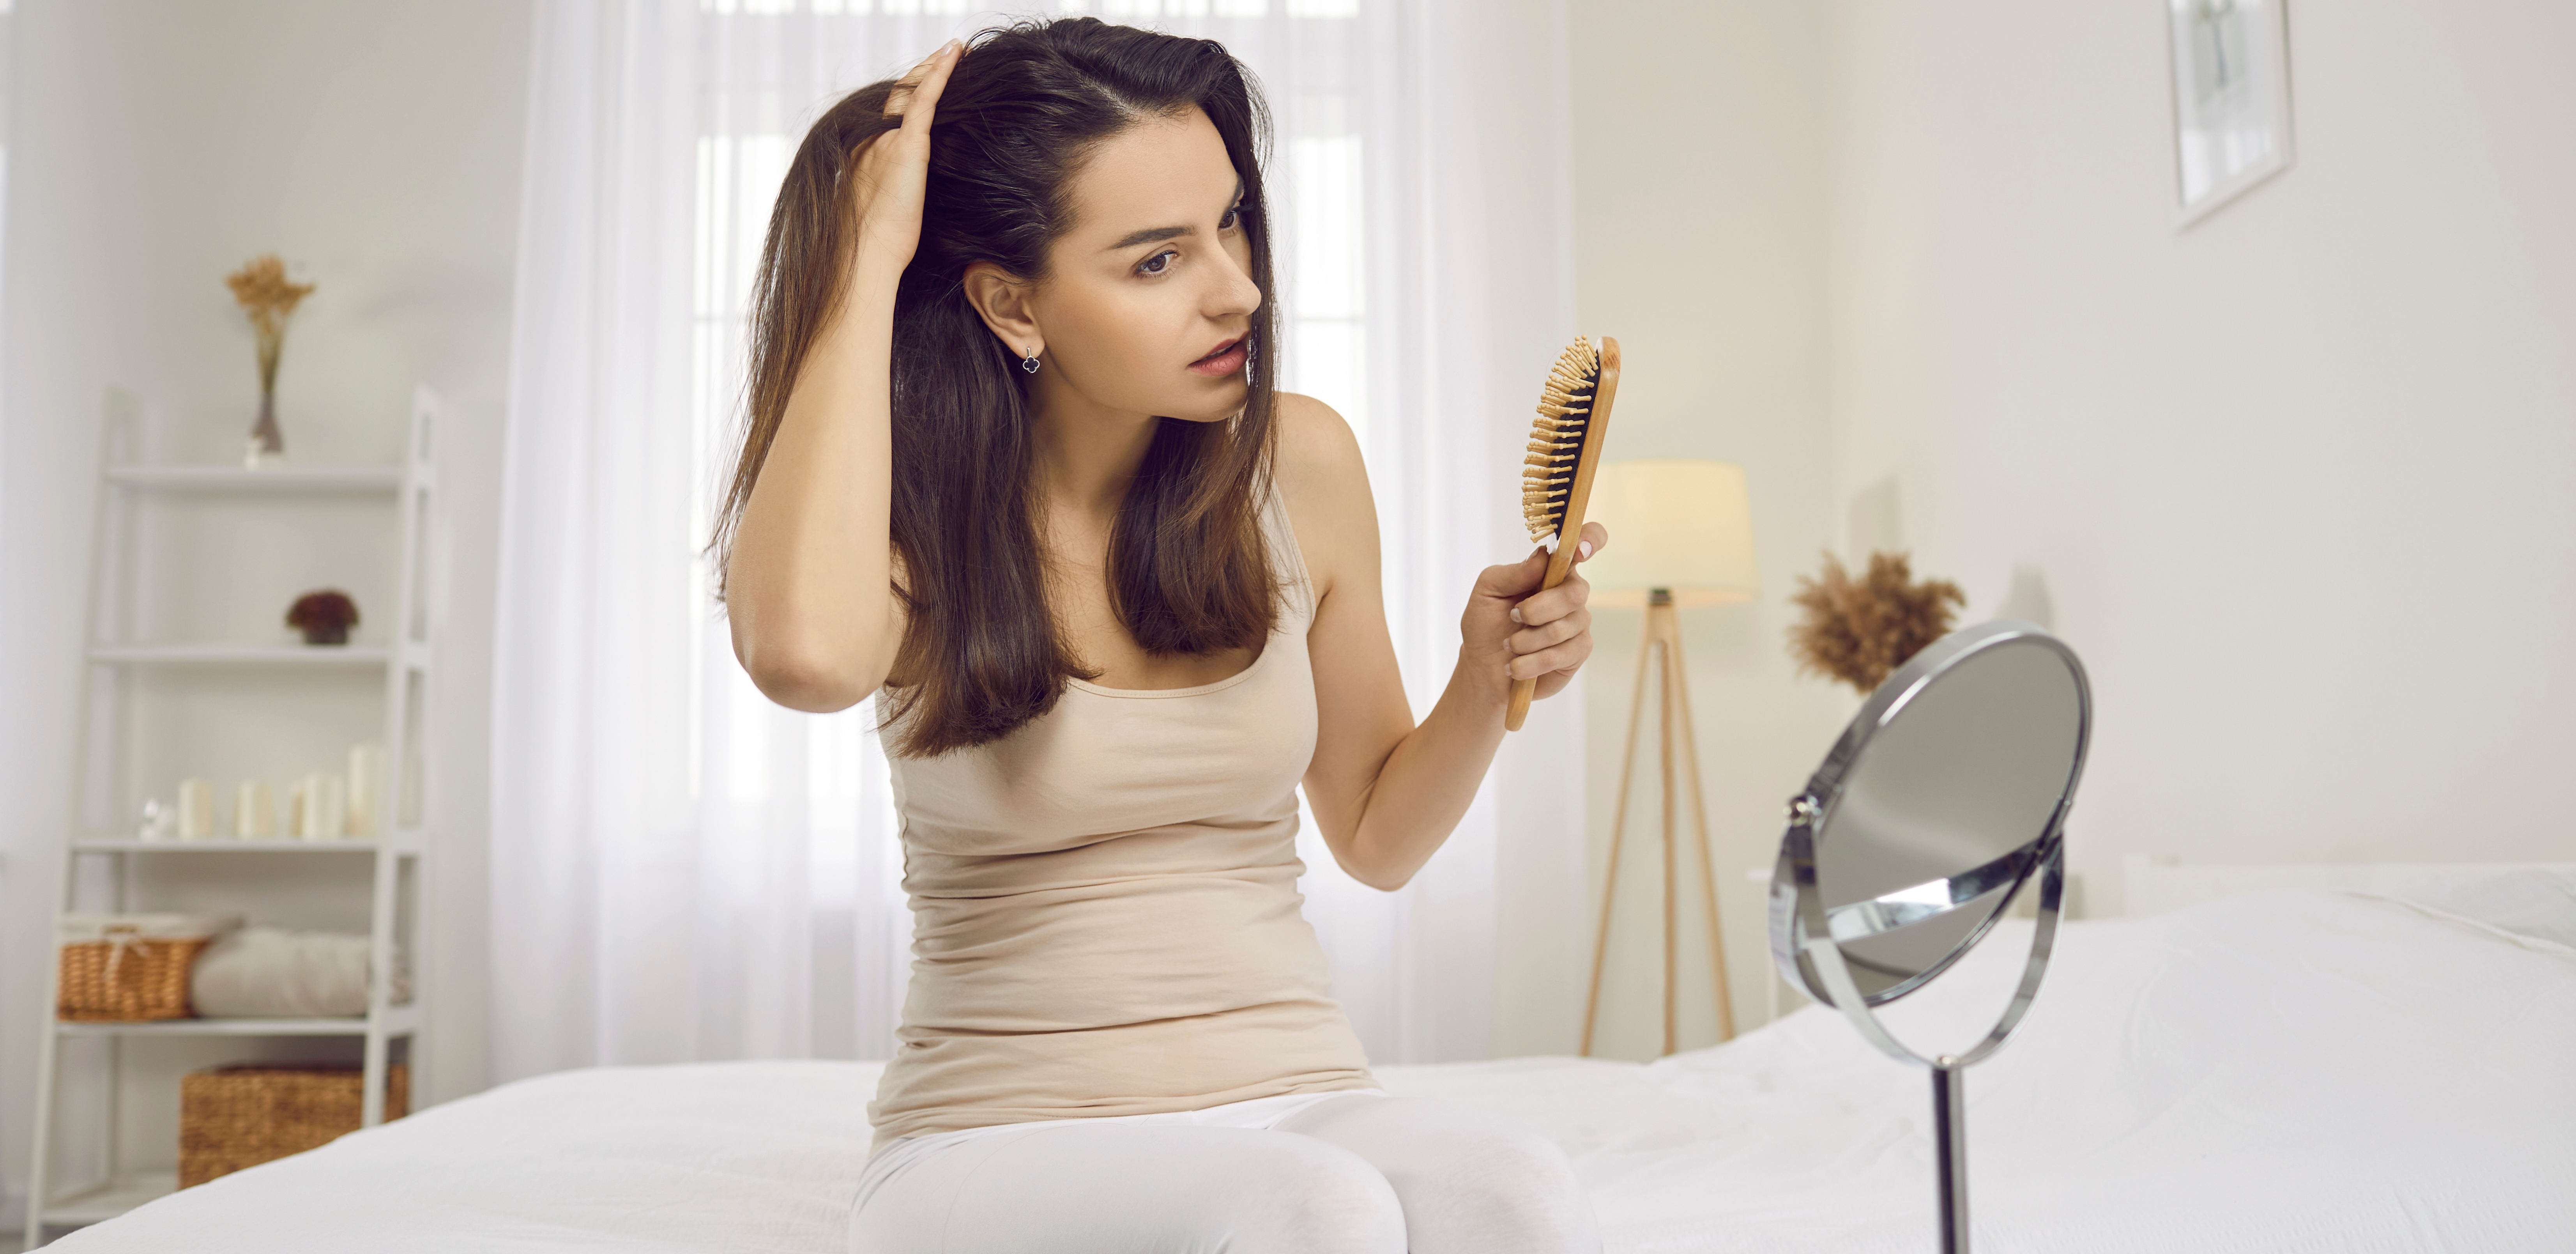 Podstaknite rast kose: Iskoristite namirnice iz kuhinje kao lek protiv opadanja kose